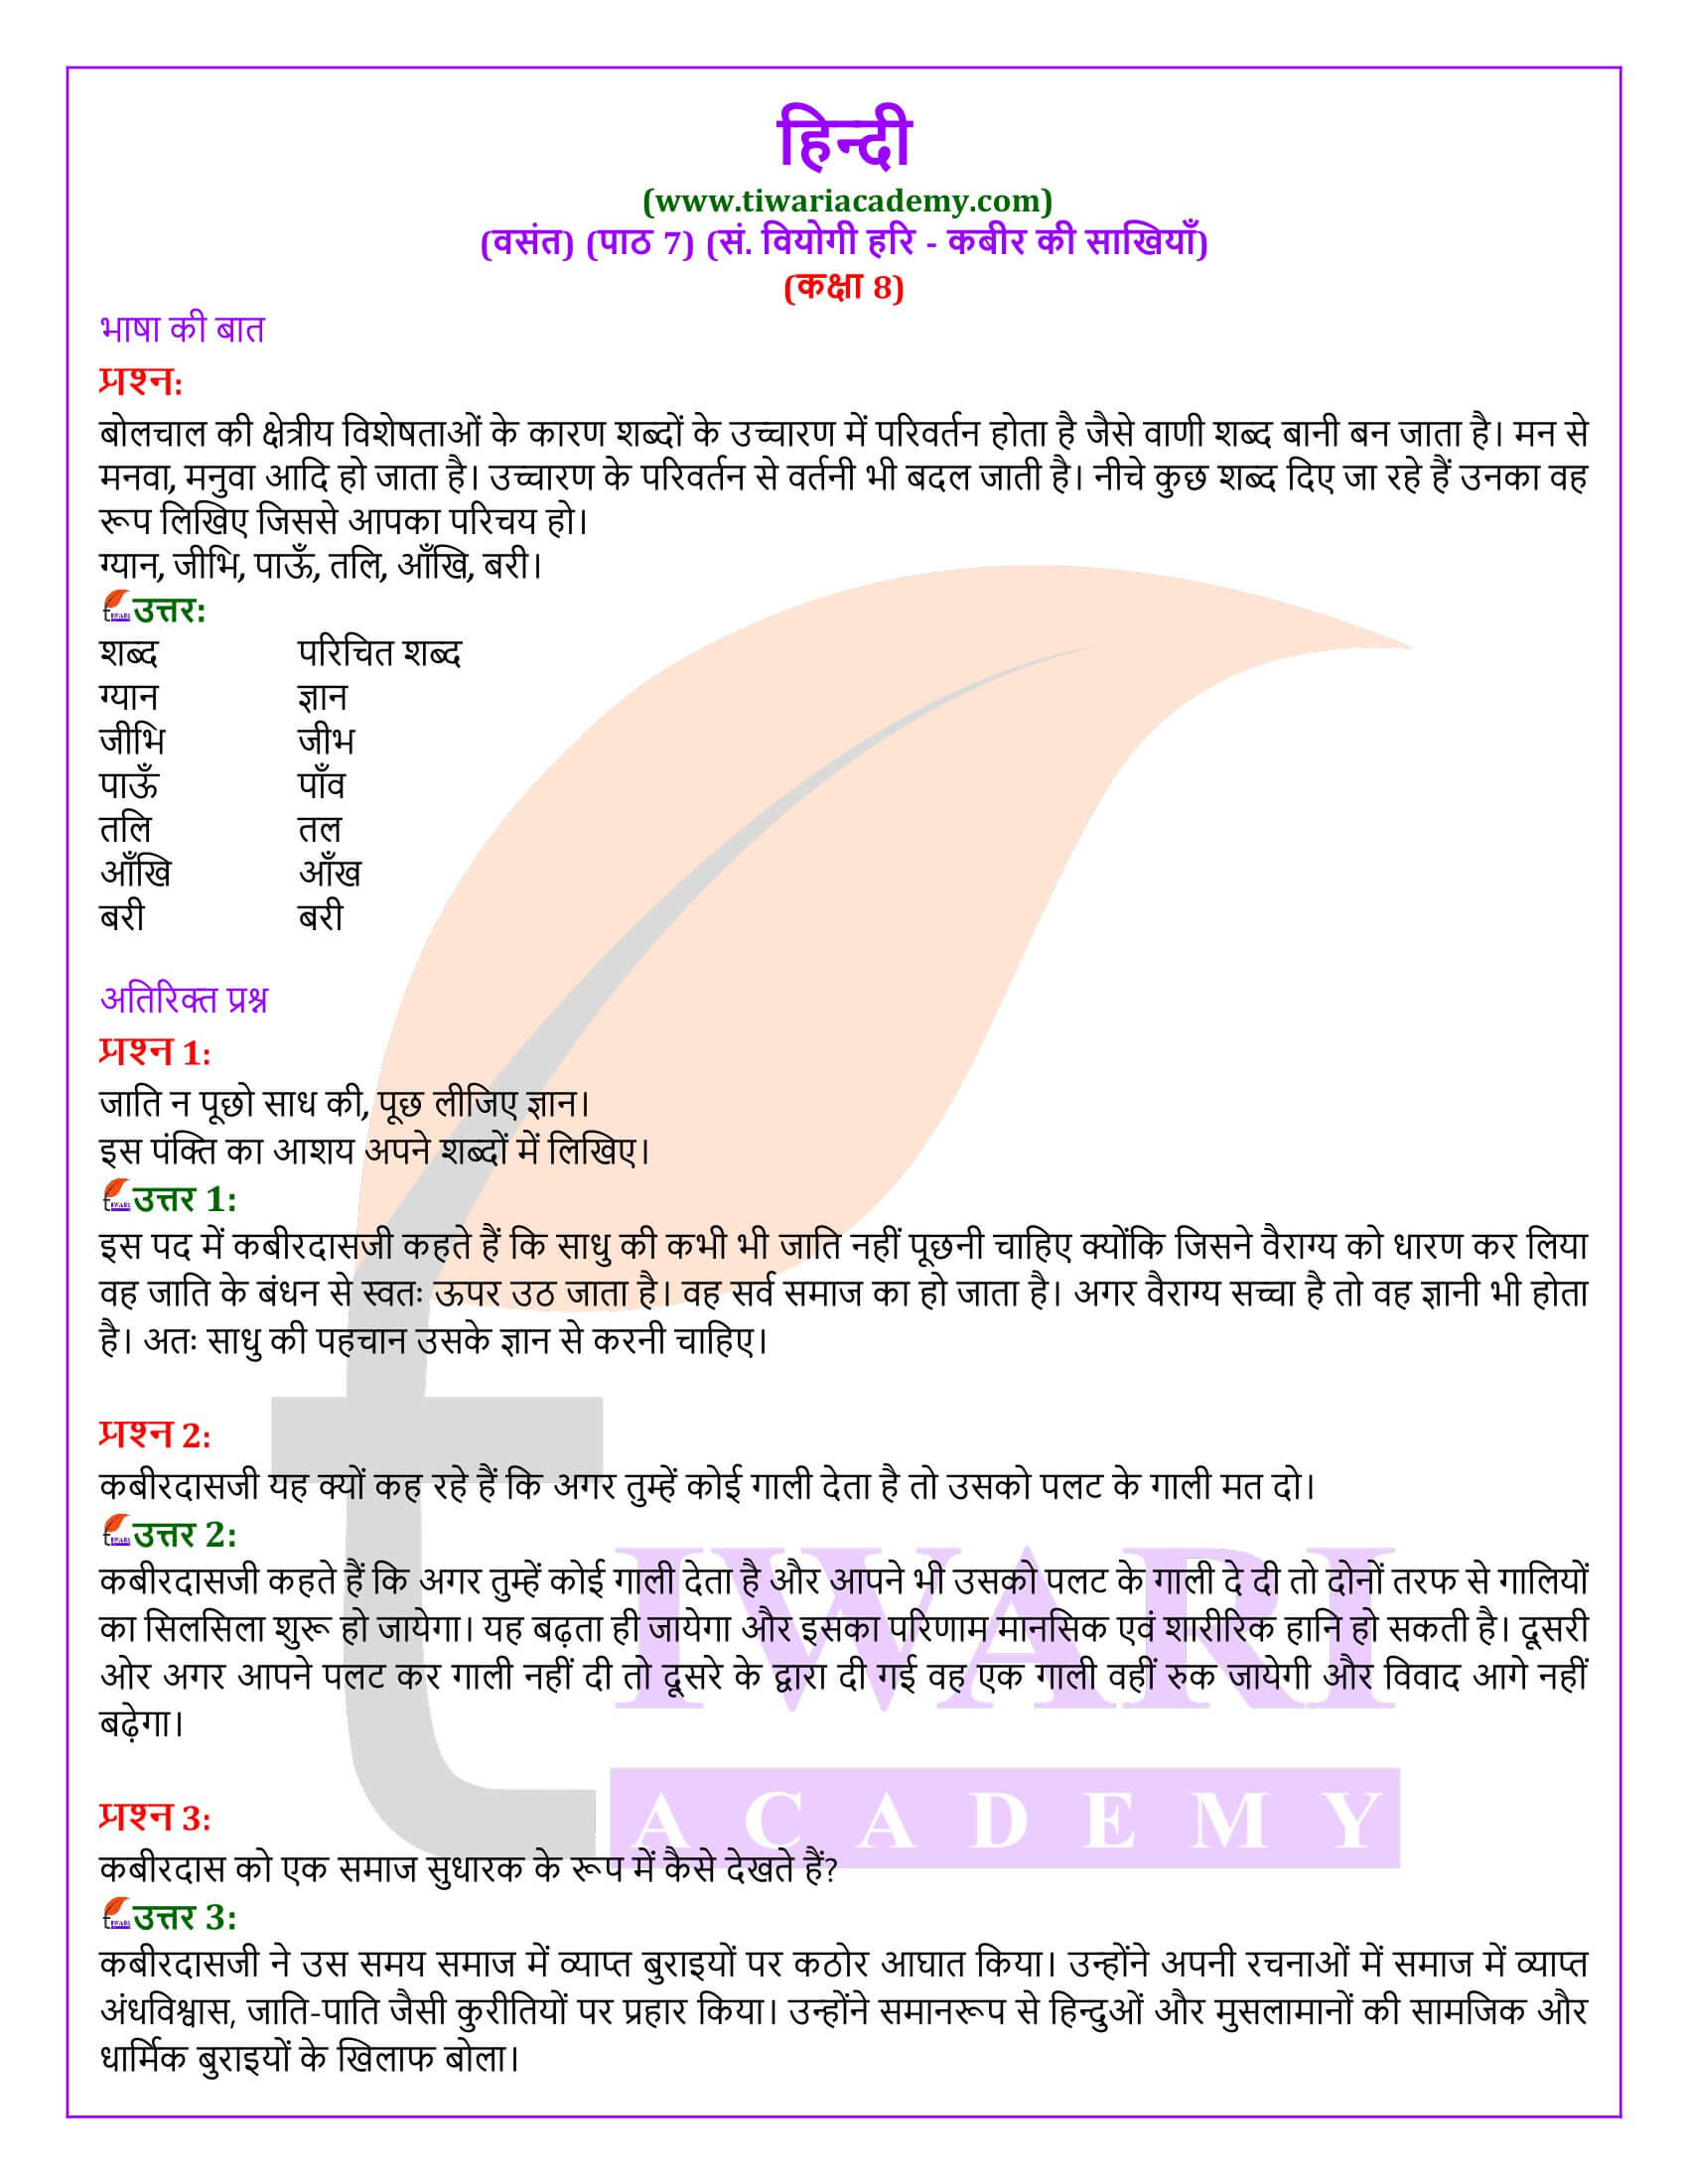 कक्षा 8 हिंदी वसंत अध्याय 7 के प्रश्न उत्तर